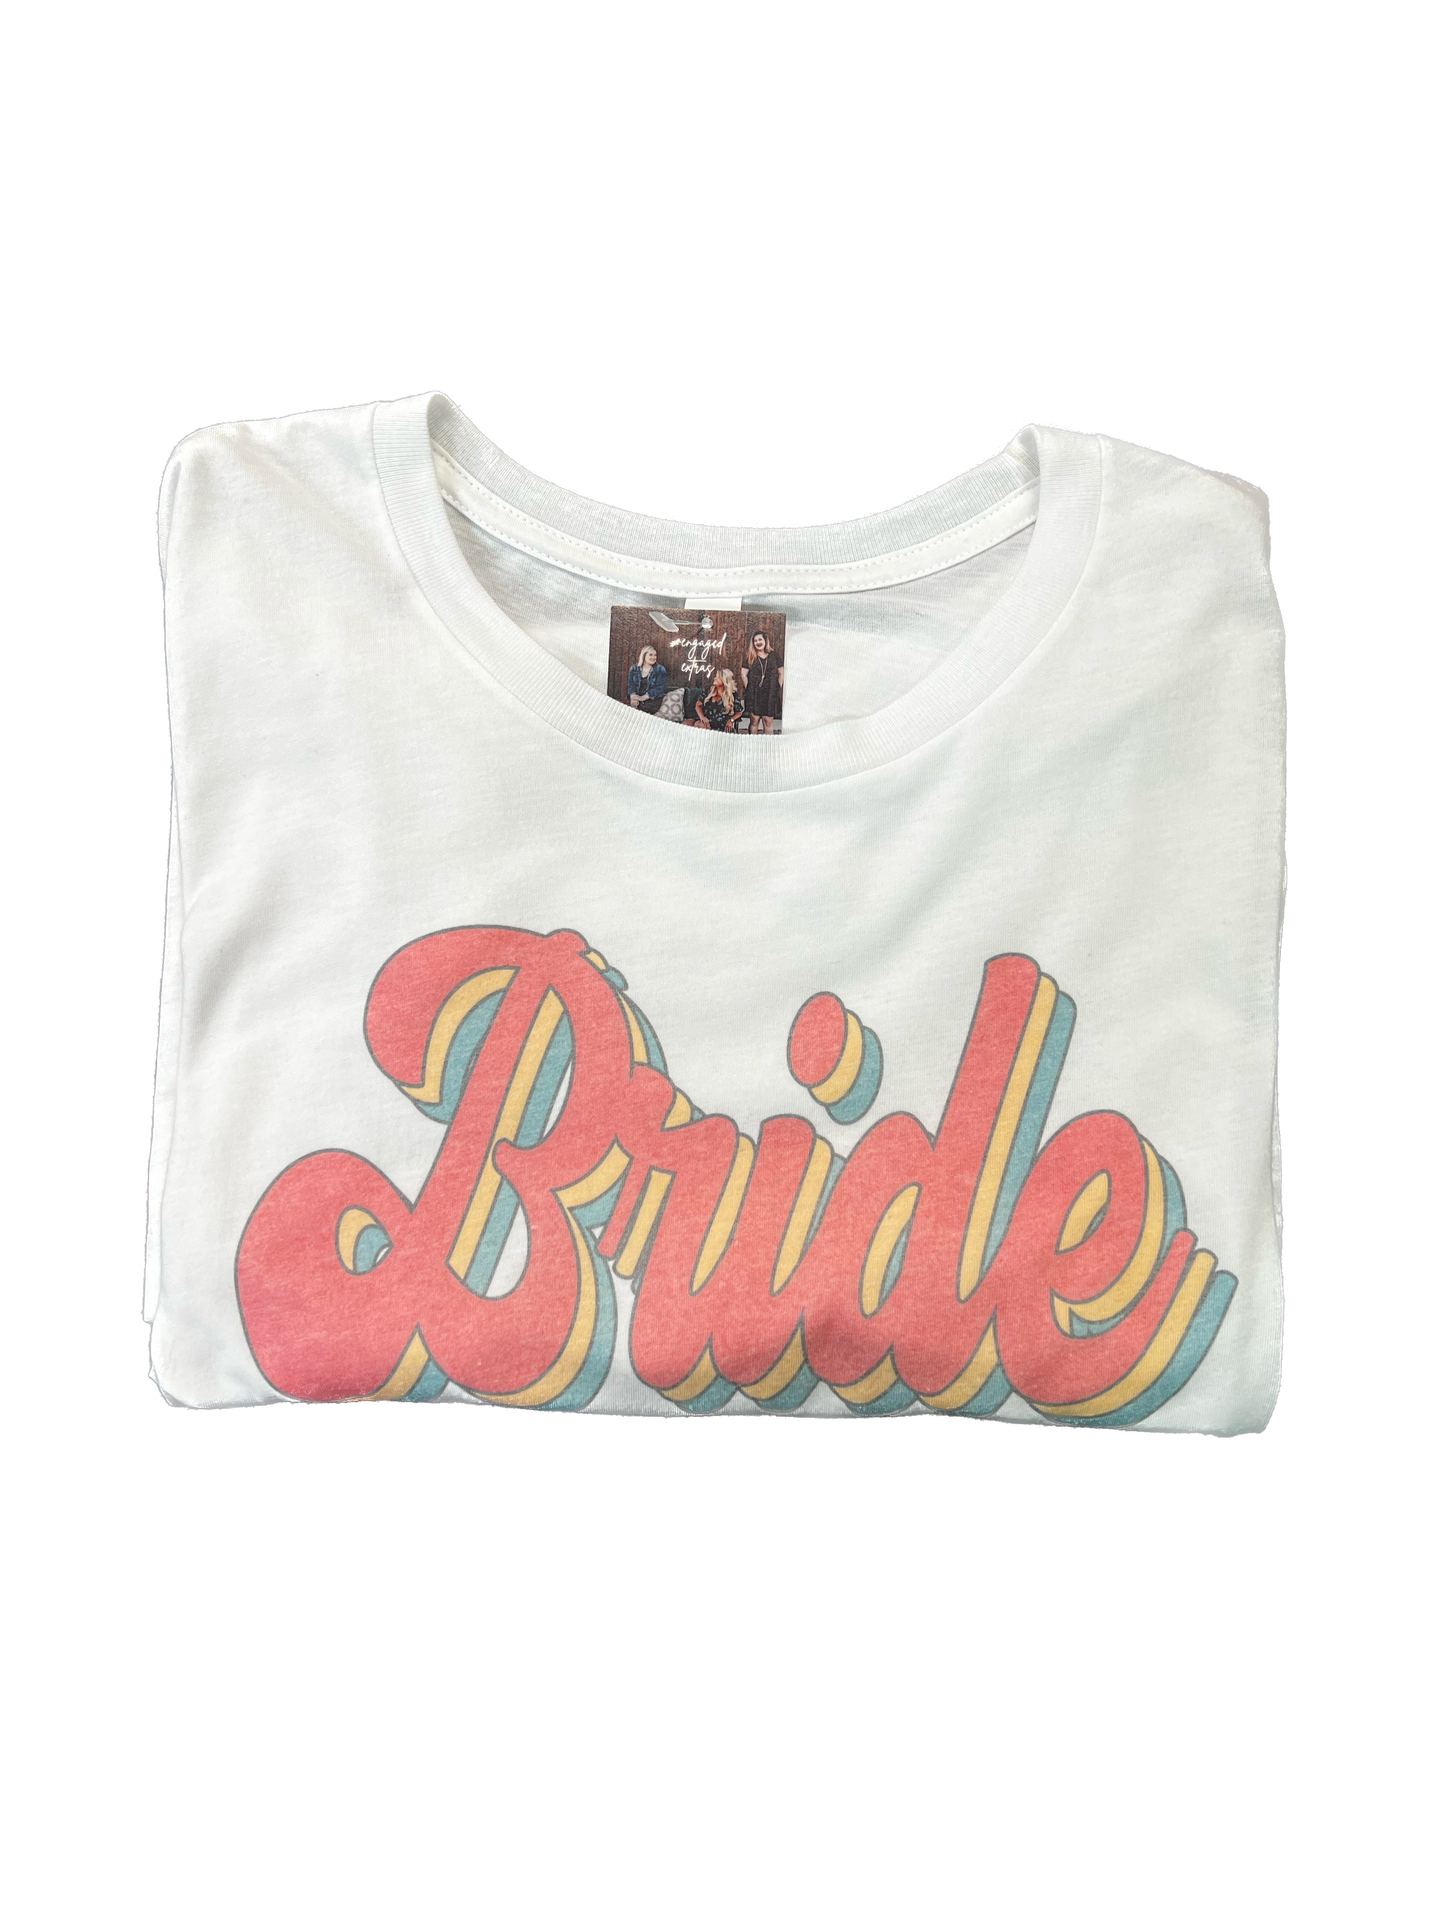 Retro Bride Shirt